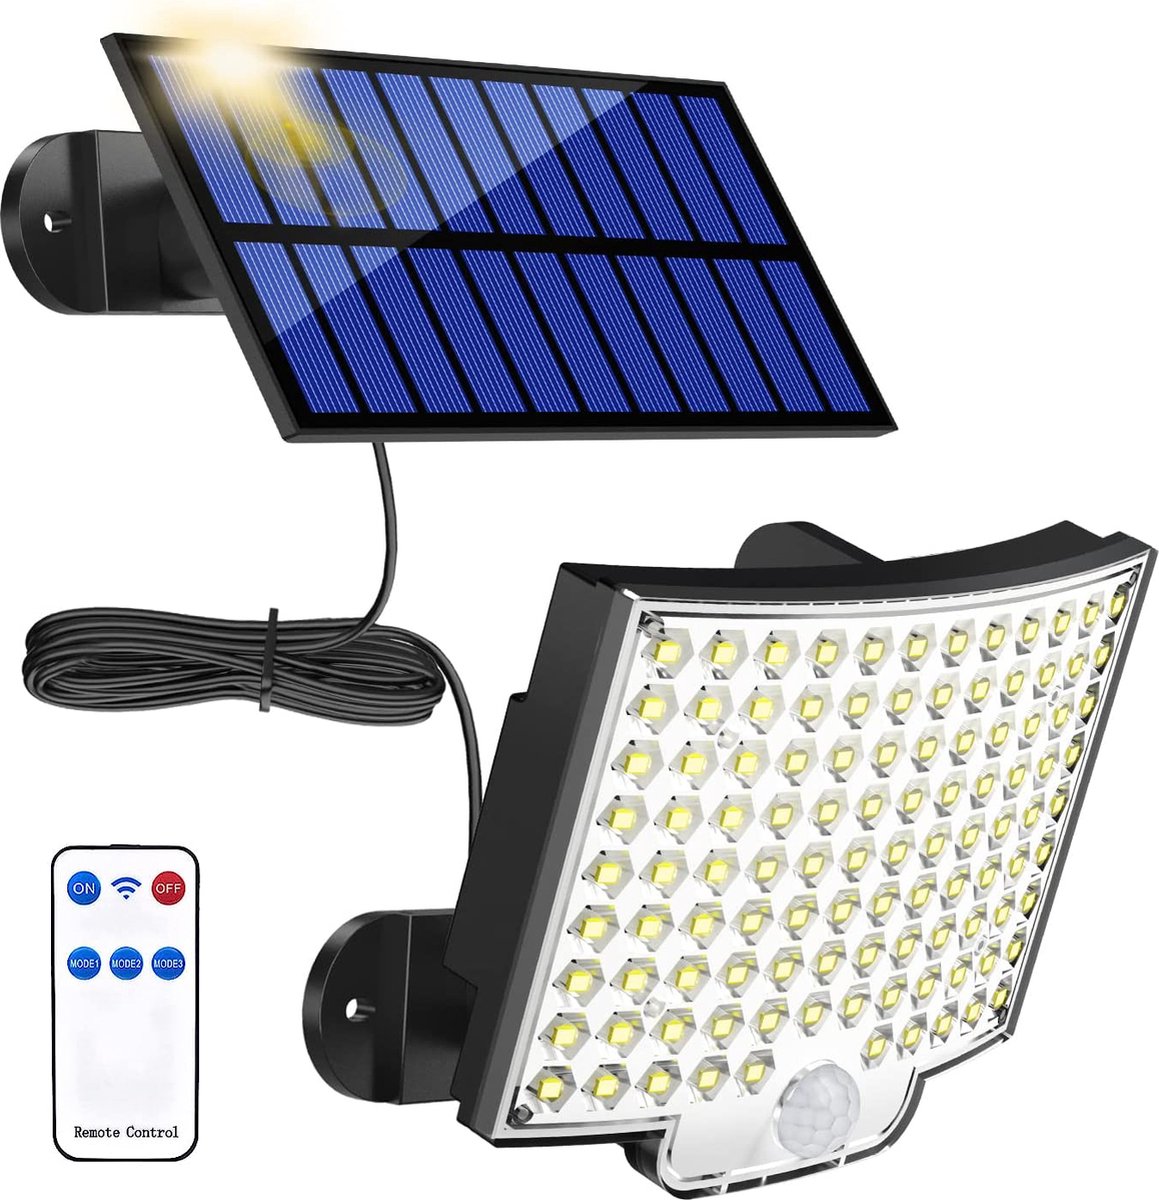 Solar Buitenlamp met bewegingssensor, 106 LED solarlamp buiten met bewegingsmelder, IP65 waterdicht, 120° lichthoek, solar wandlamp voor tuin met 5m kabel